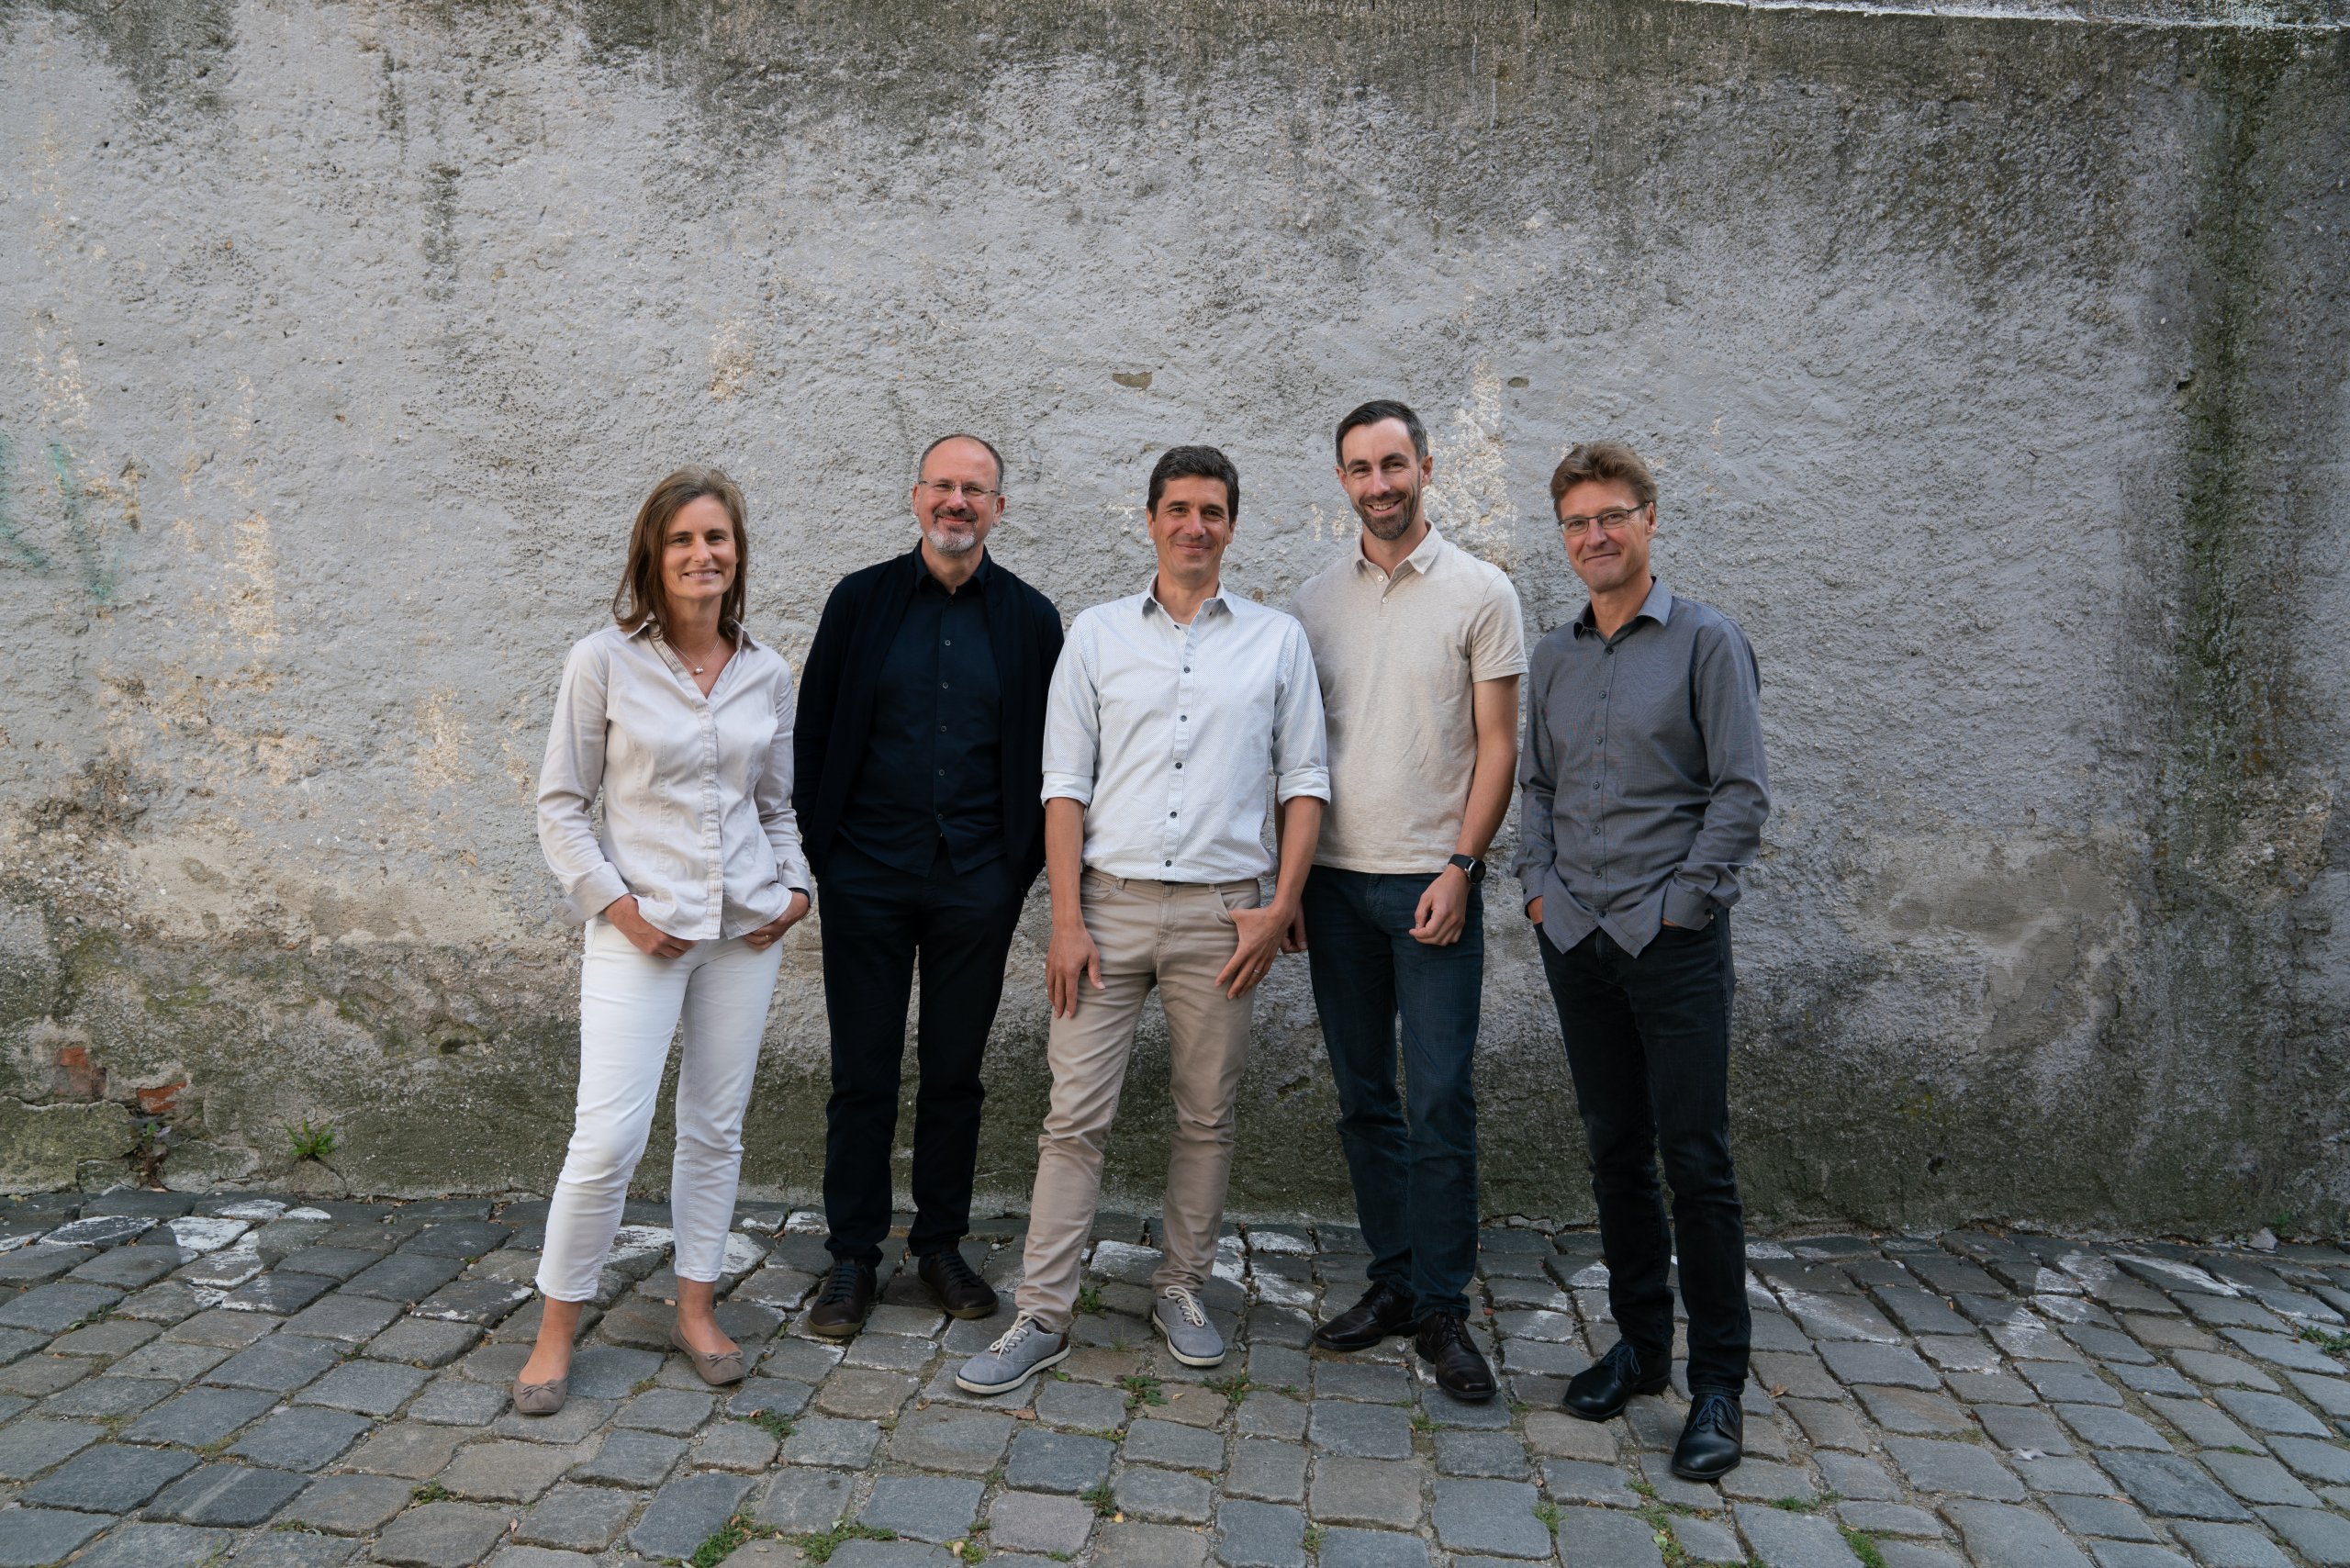 Bild: Die neue Zusammensetzung der Partnerschaft mit Birgit Kröniger, Robert Wenk, Stephan Gentz, Simon Winkler und Jochen Rümpelein